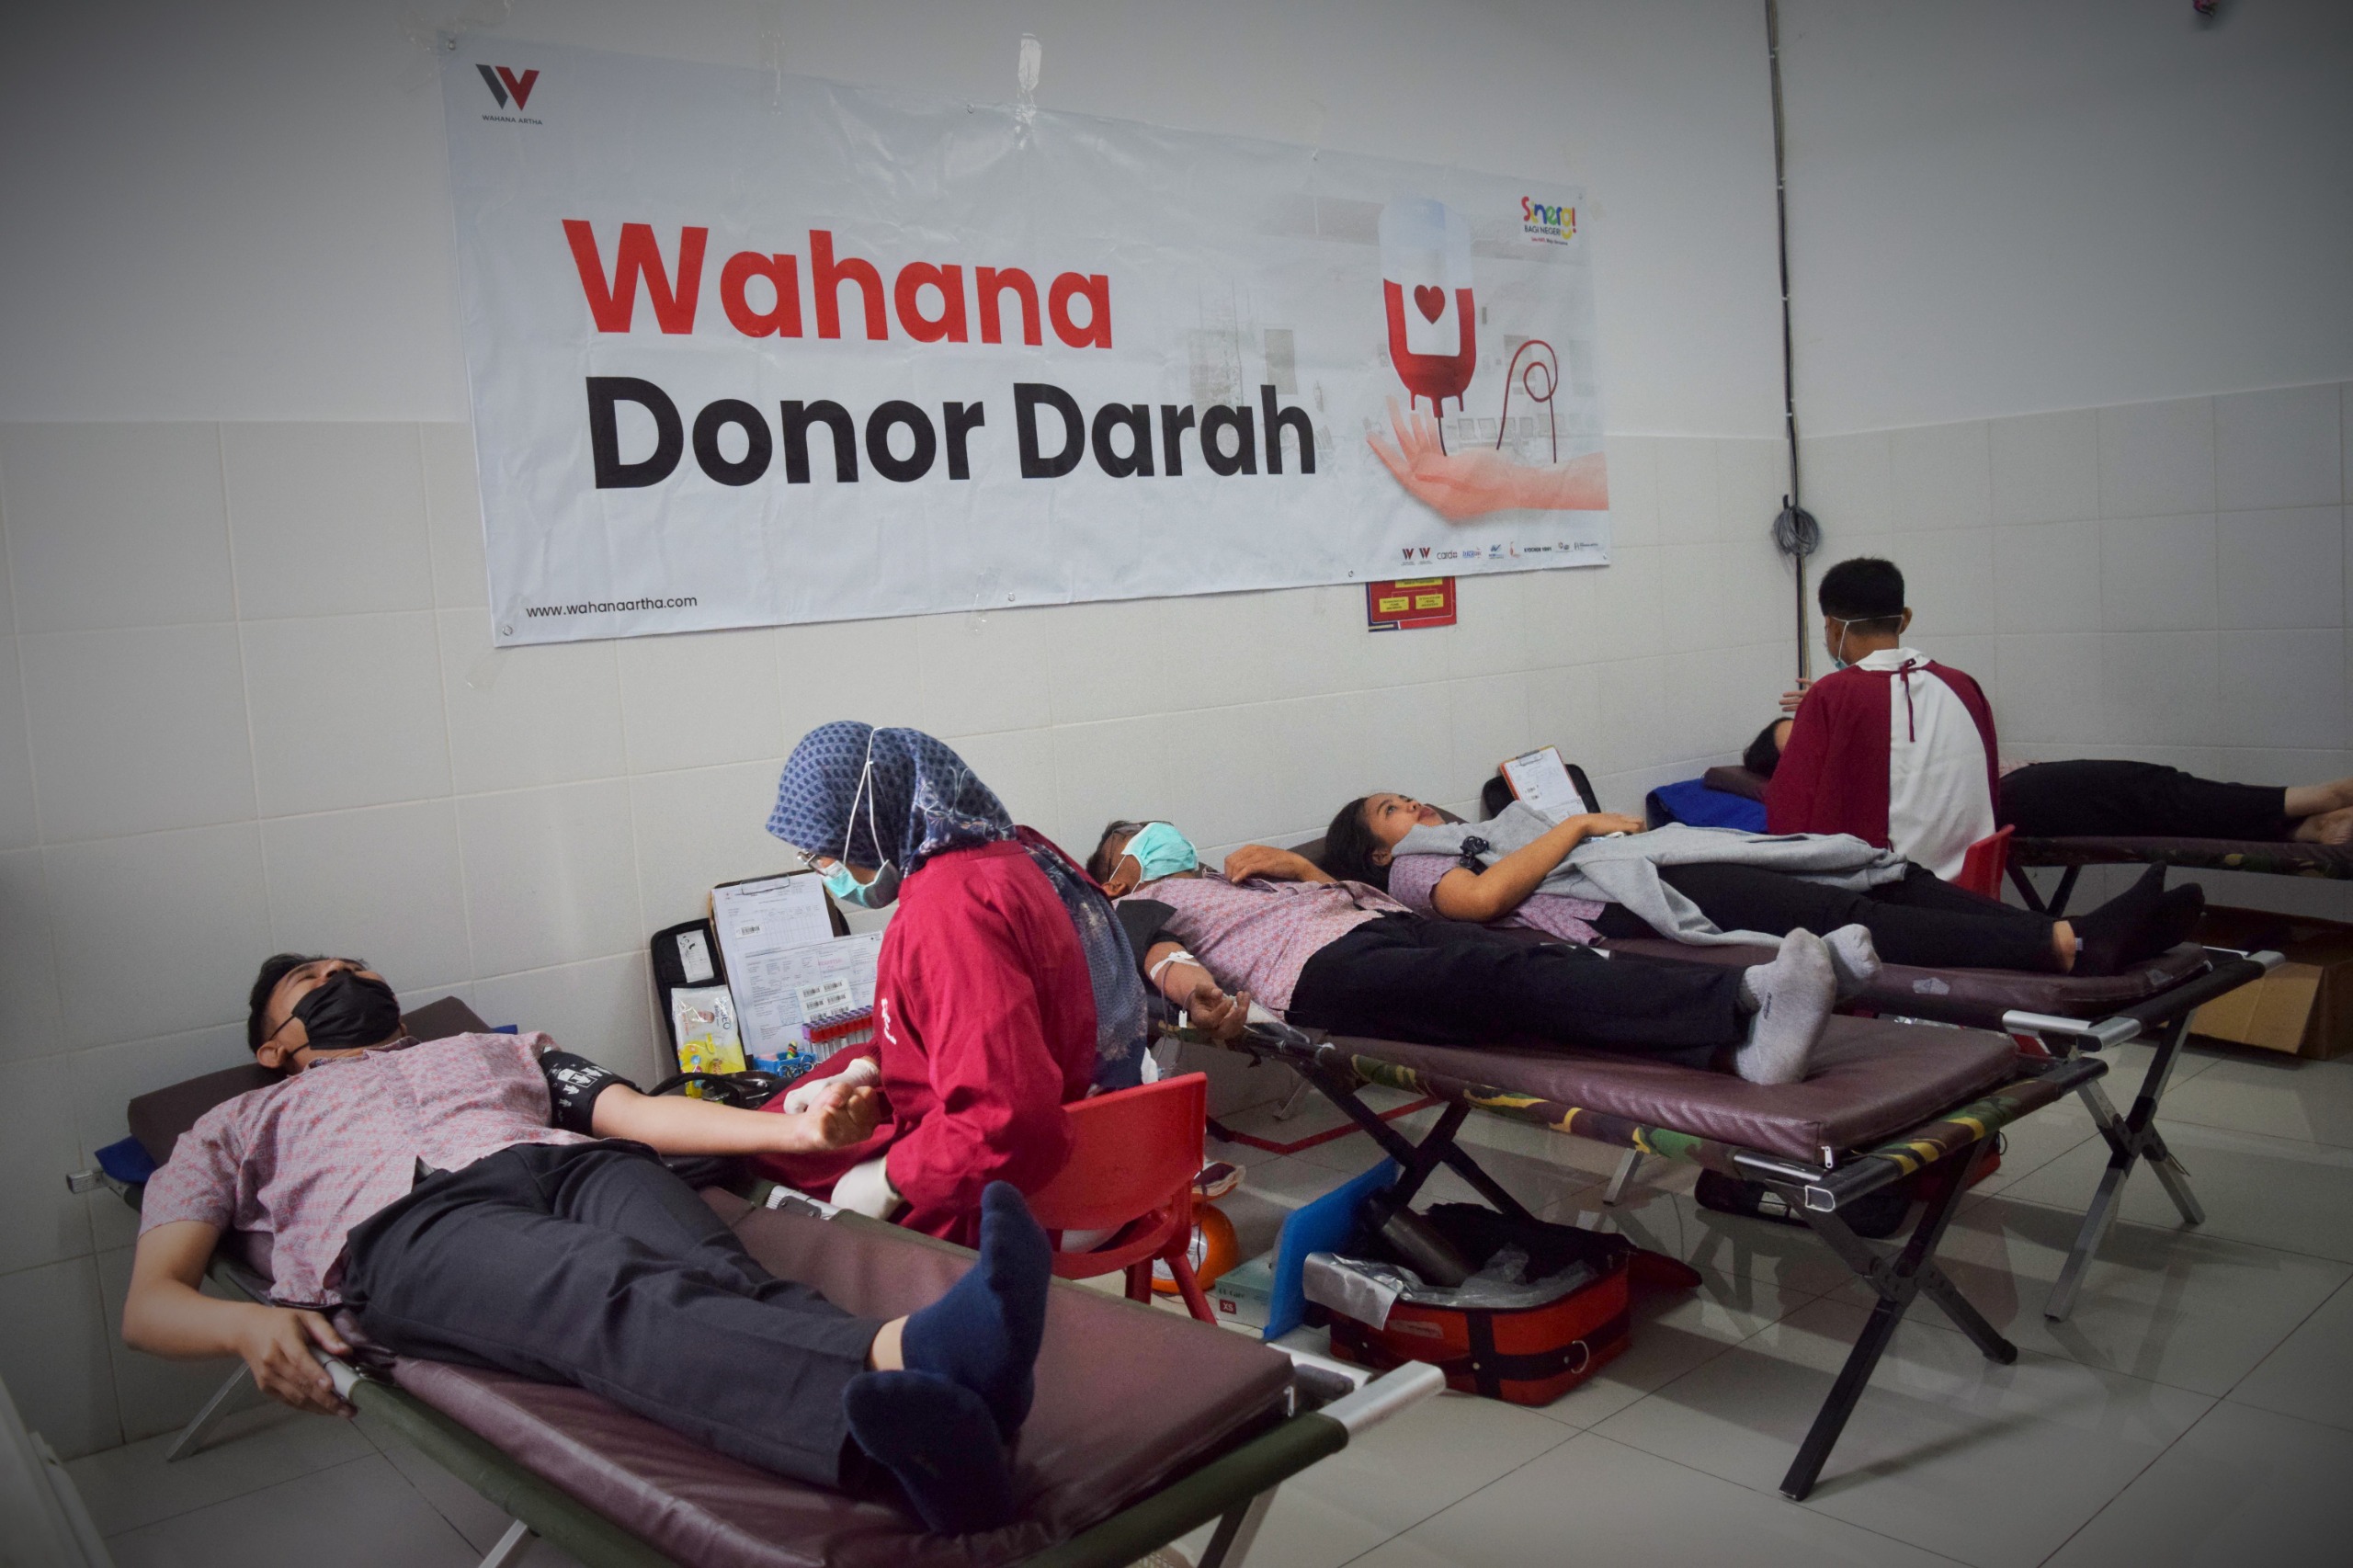 Sambut HUT ke-52, Lebih Dari Seratus Orang Ikut Donor Darah Wahana Artha Group